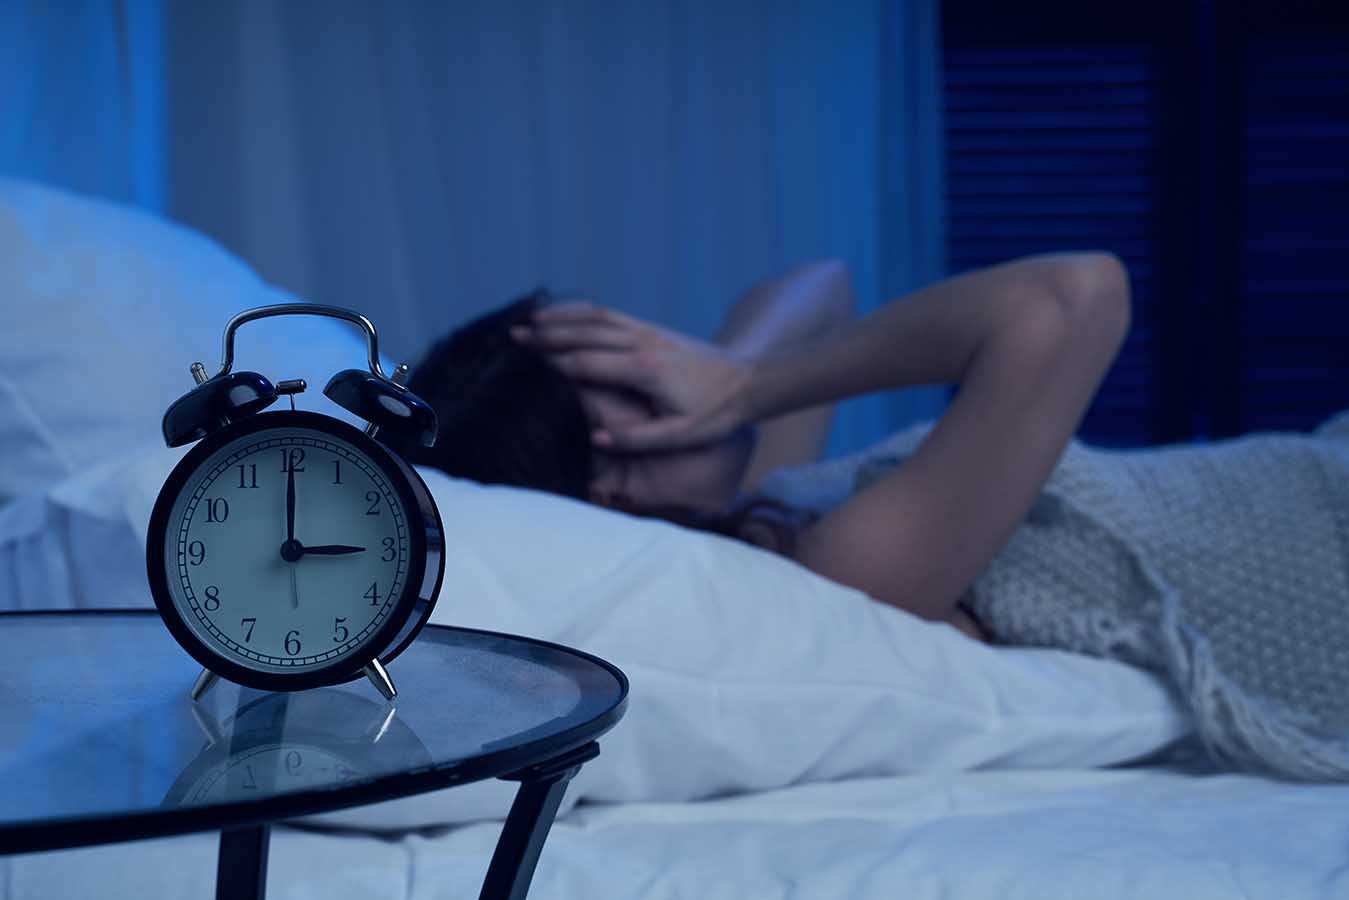 Kurang Tidur Bikin Sakit Kepala, Benarkah?